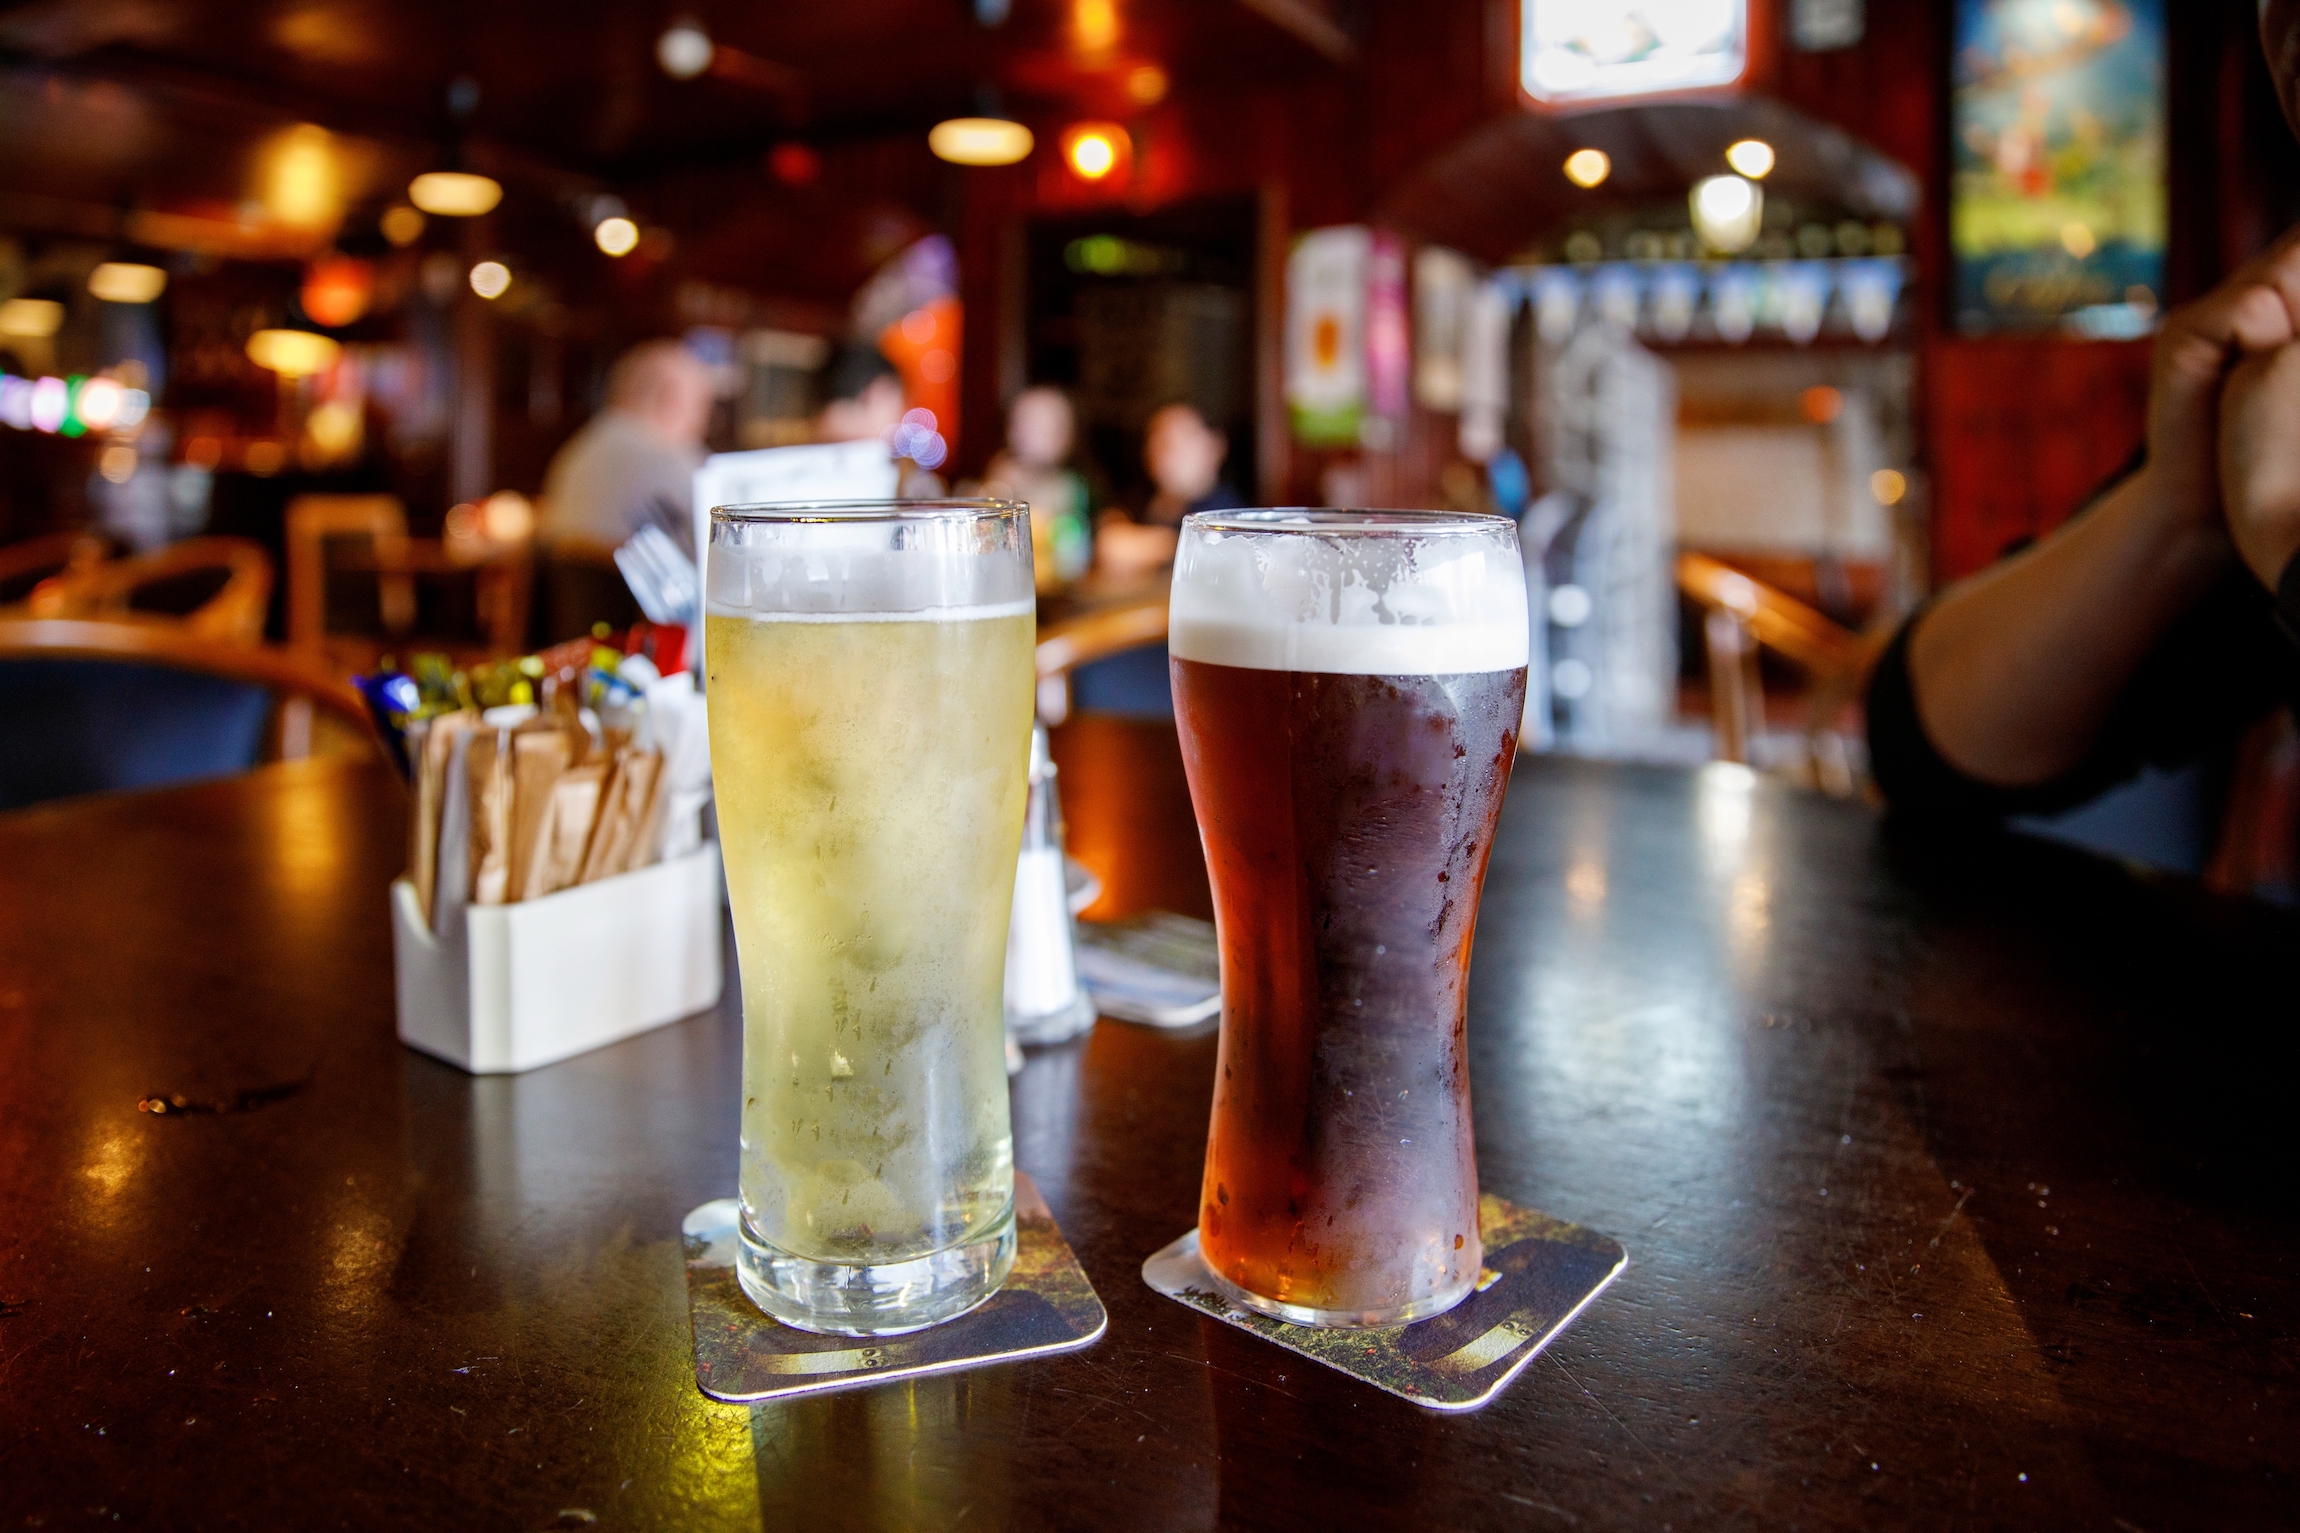 Stolik z piwem w Temple Bar to słynny punkt orientacyjny w kulturalnej dzielnicy Dublina, odwiedzany co roku przez tysiące turystów. Wnętrze Temple Bar w centrum irlandzkiej stolicy